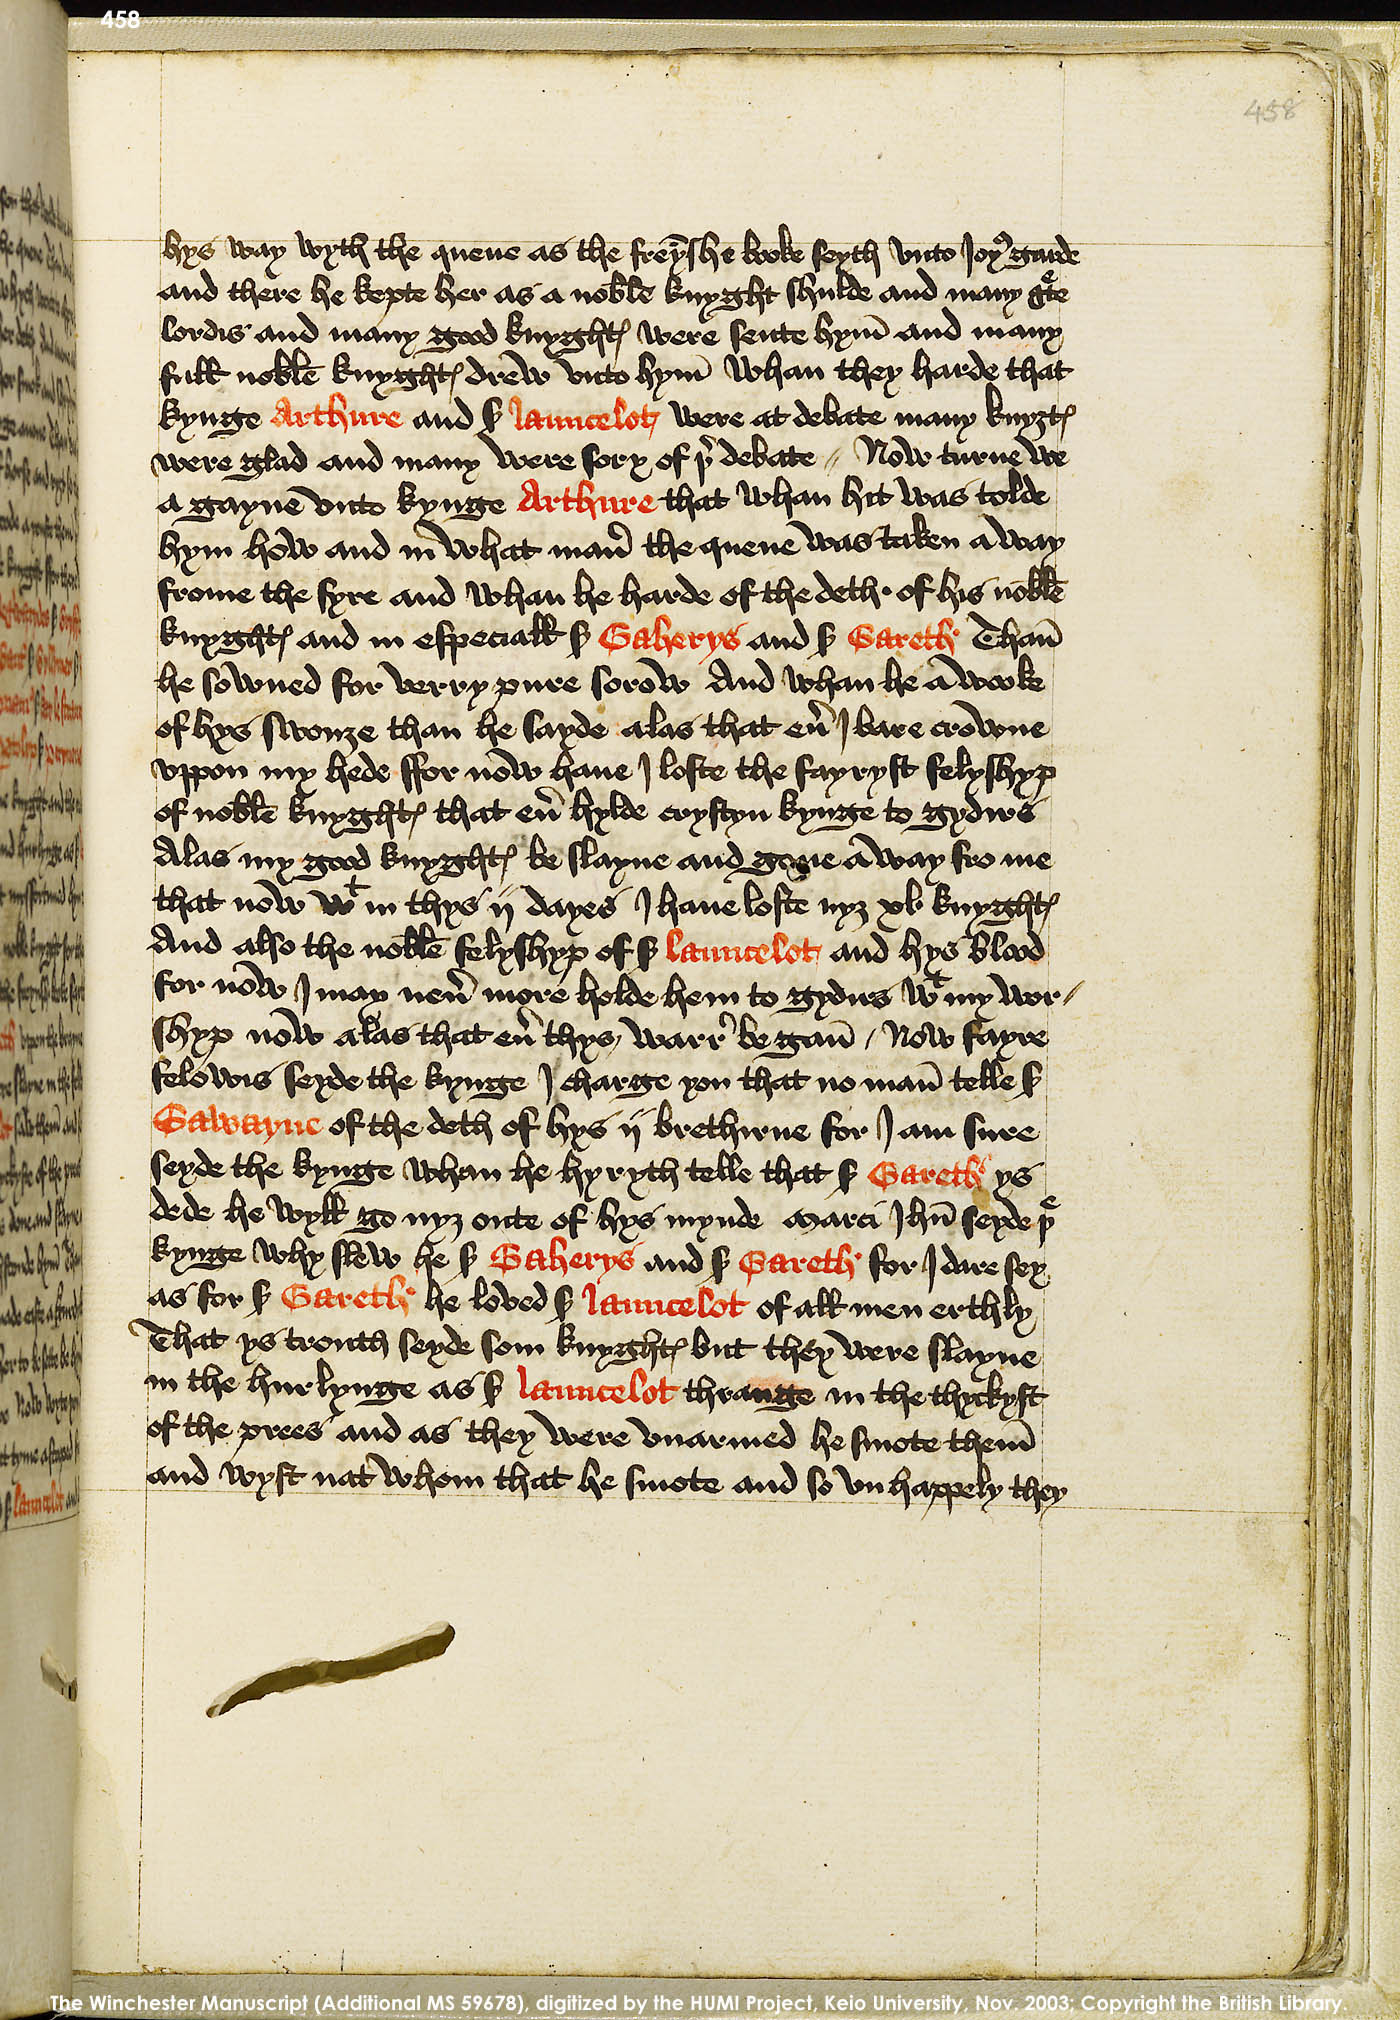 Folio 458r